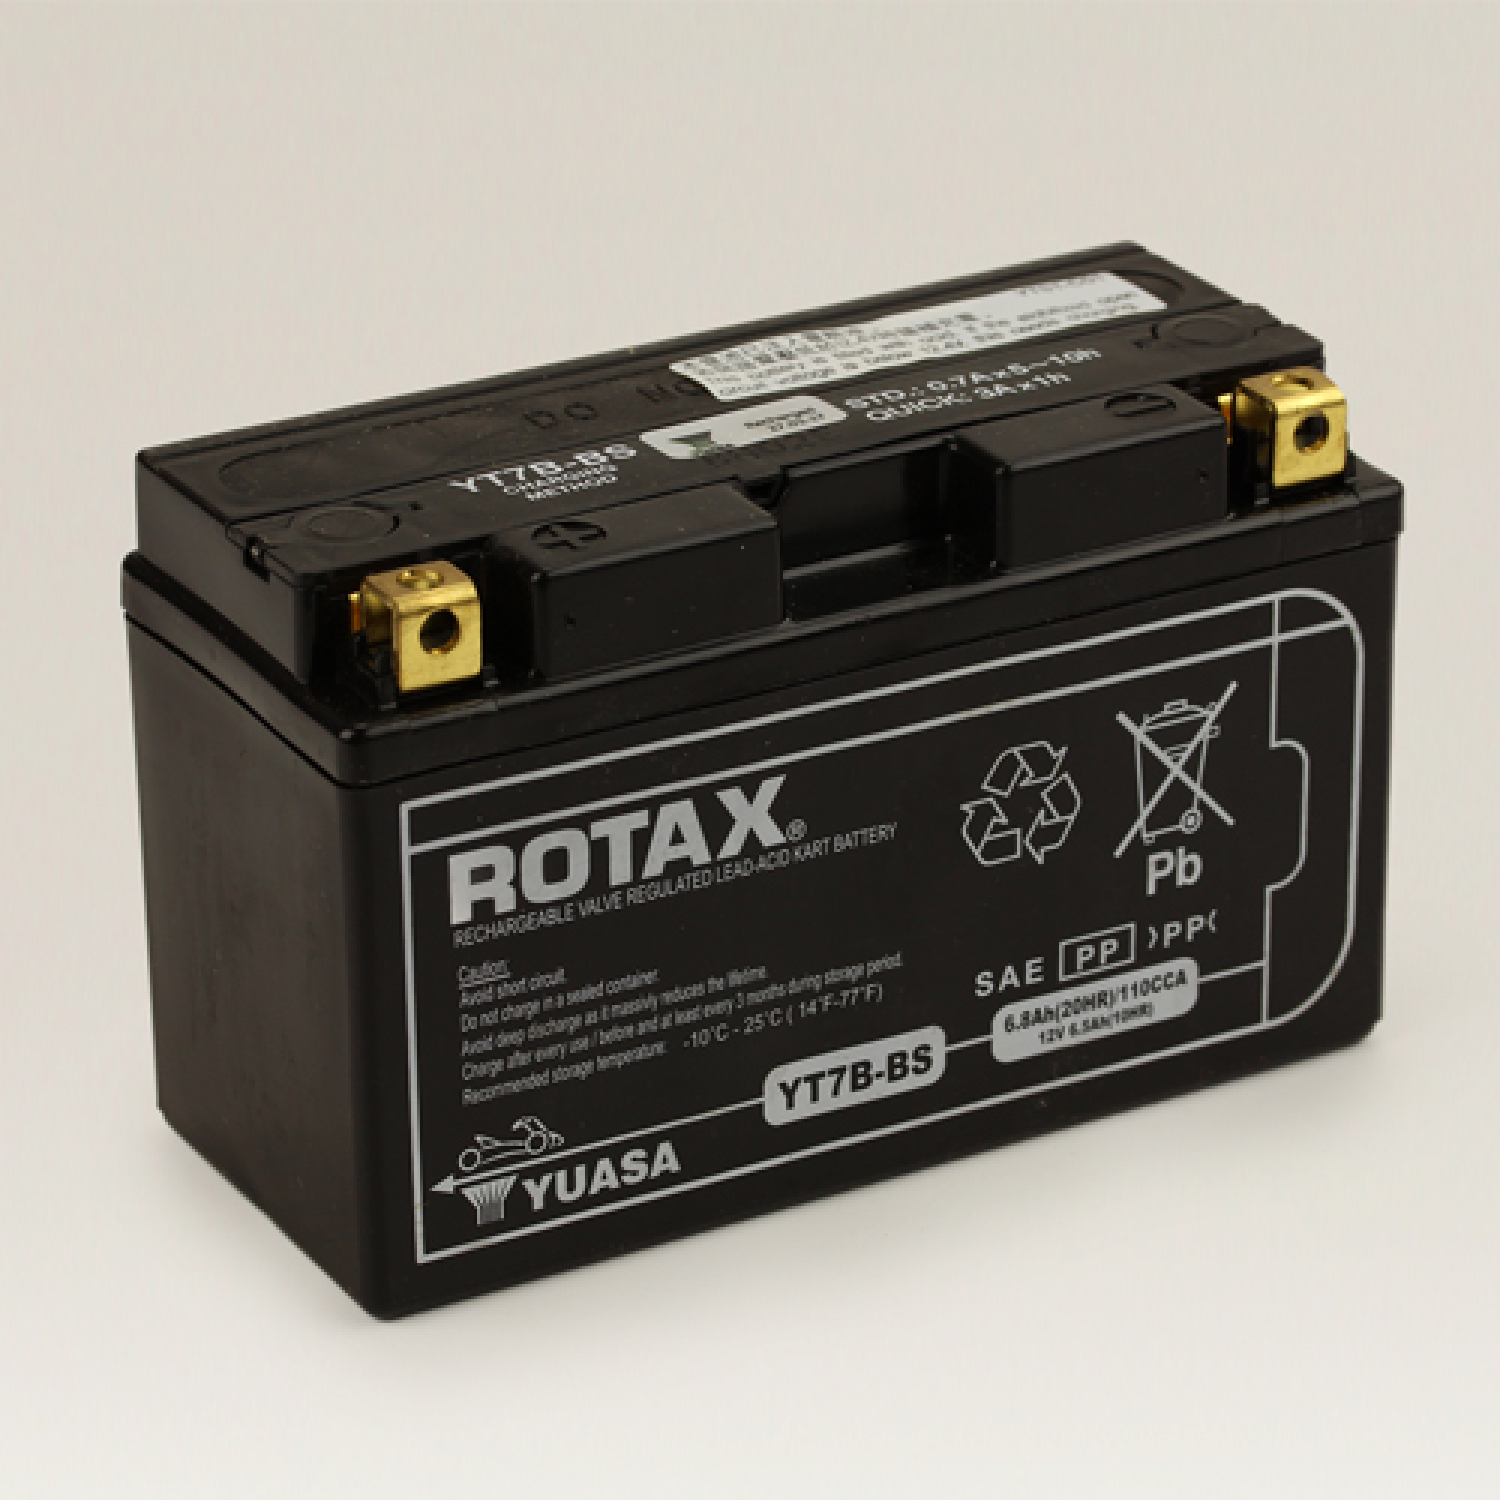 Batterie Rotax 12V-6,5Ah